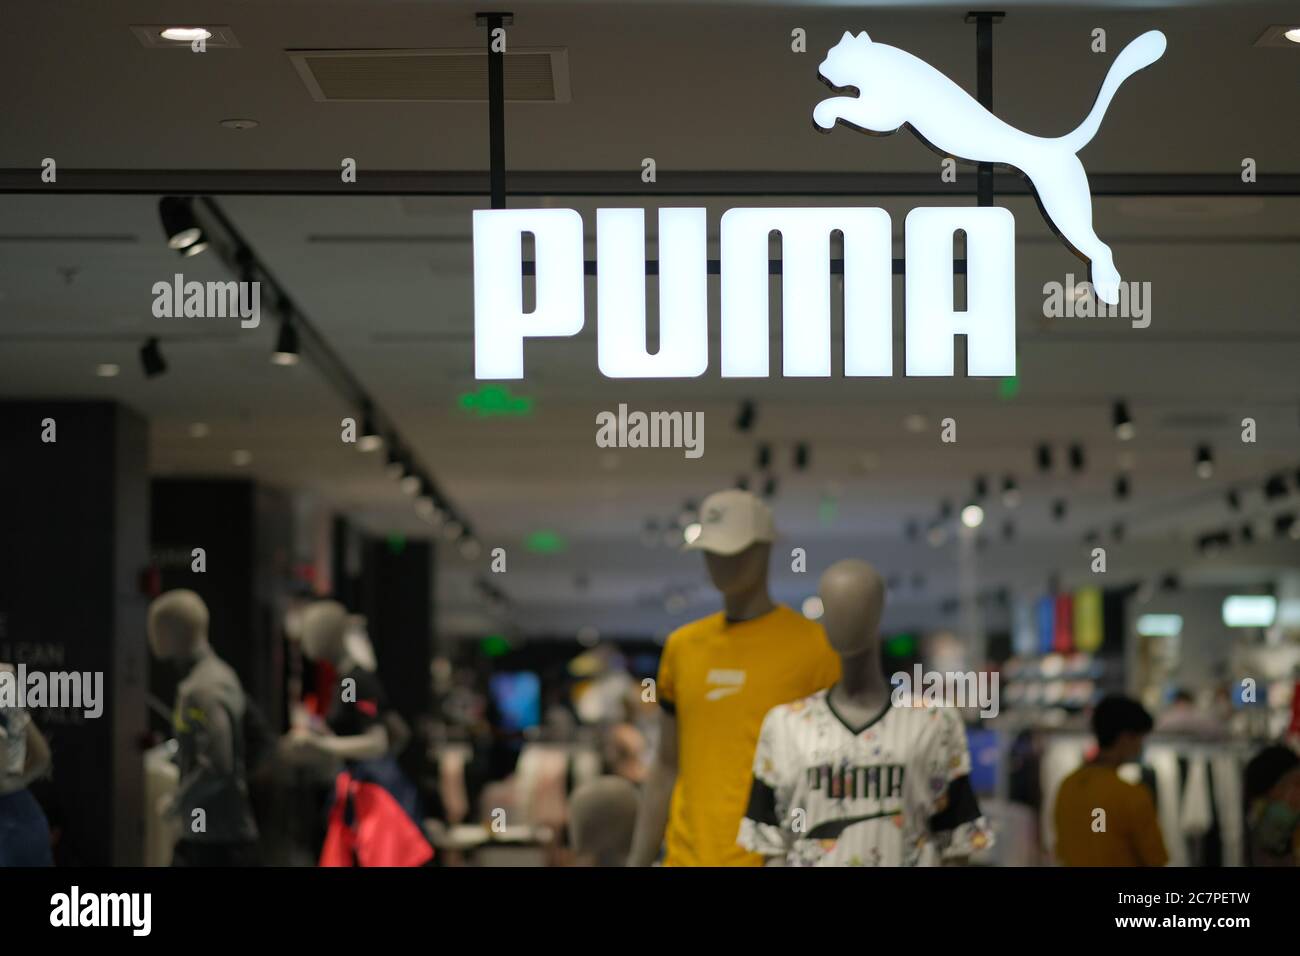 La Multinacional Alemana Ropa Deportiva Puma Y Puma Select Tienda Vista En Hong Kong Fotografía Stock Alamy |